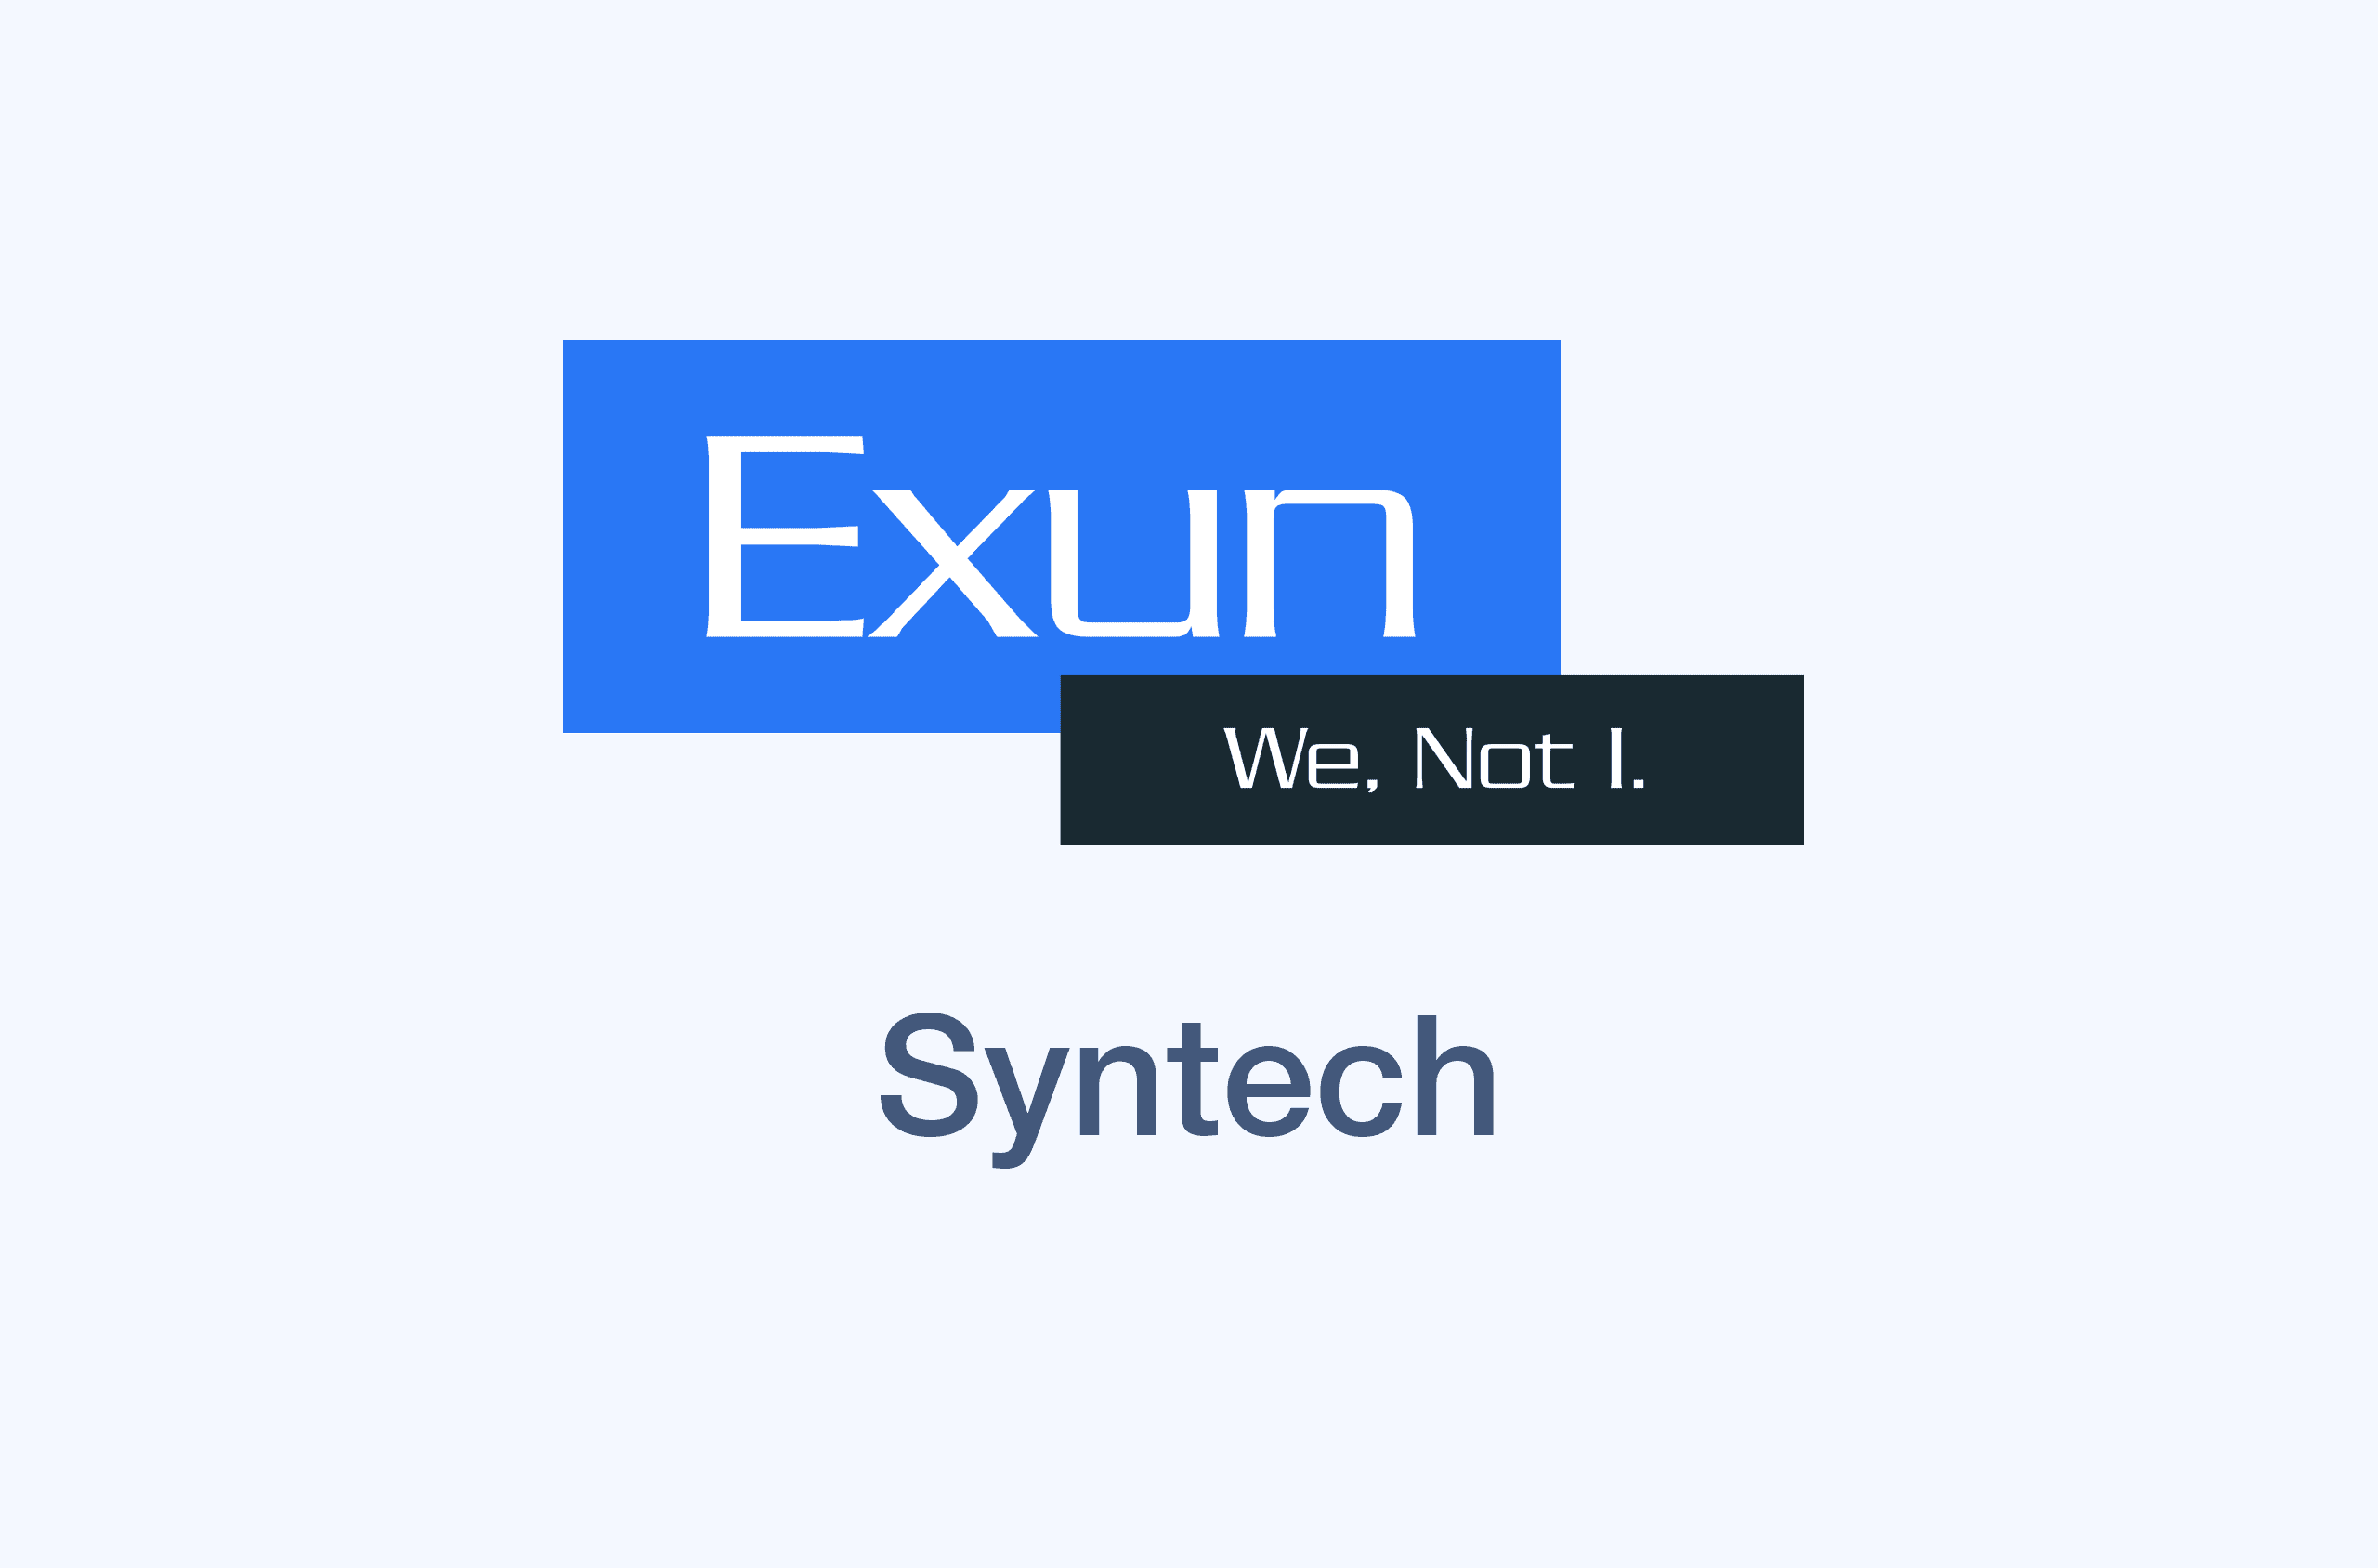 Syntech's image